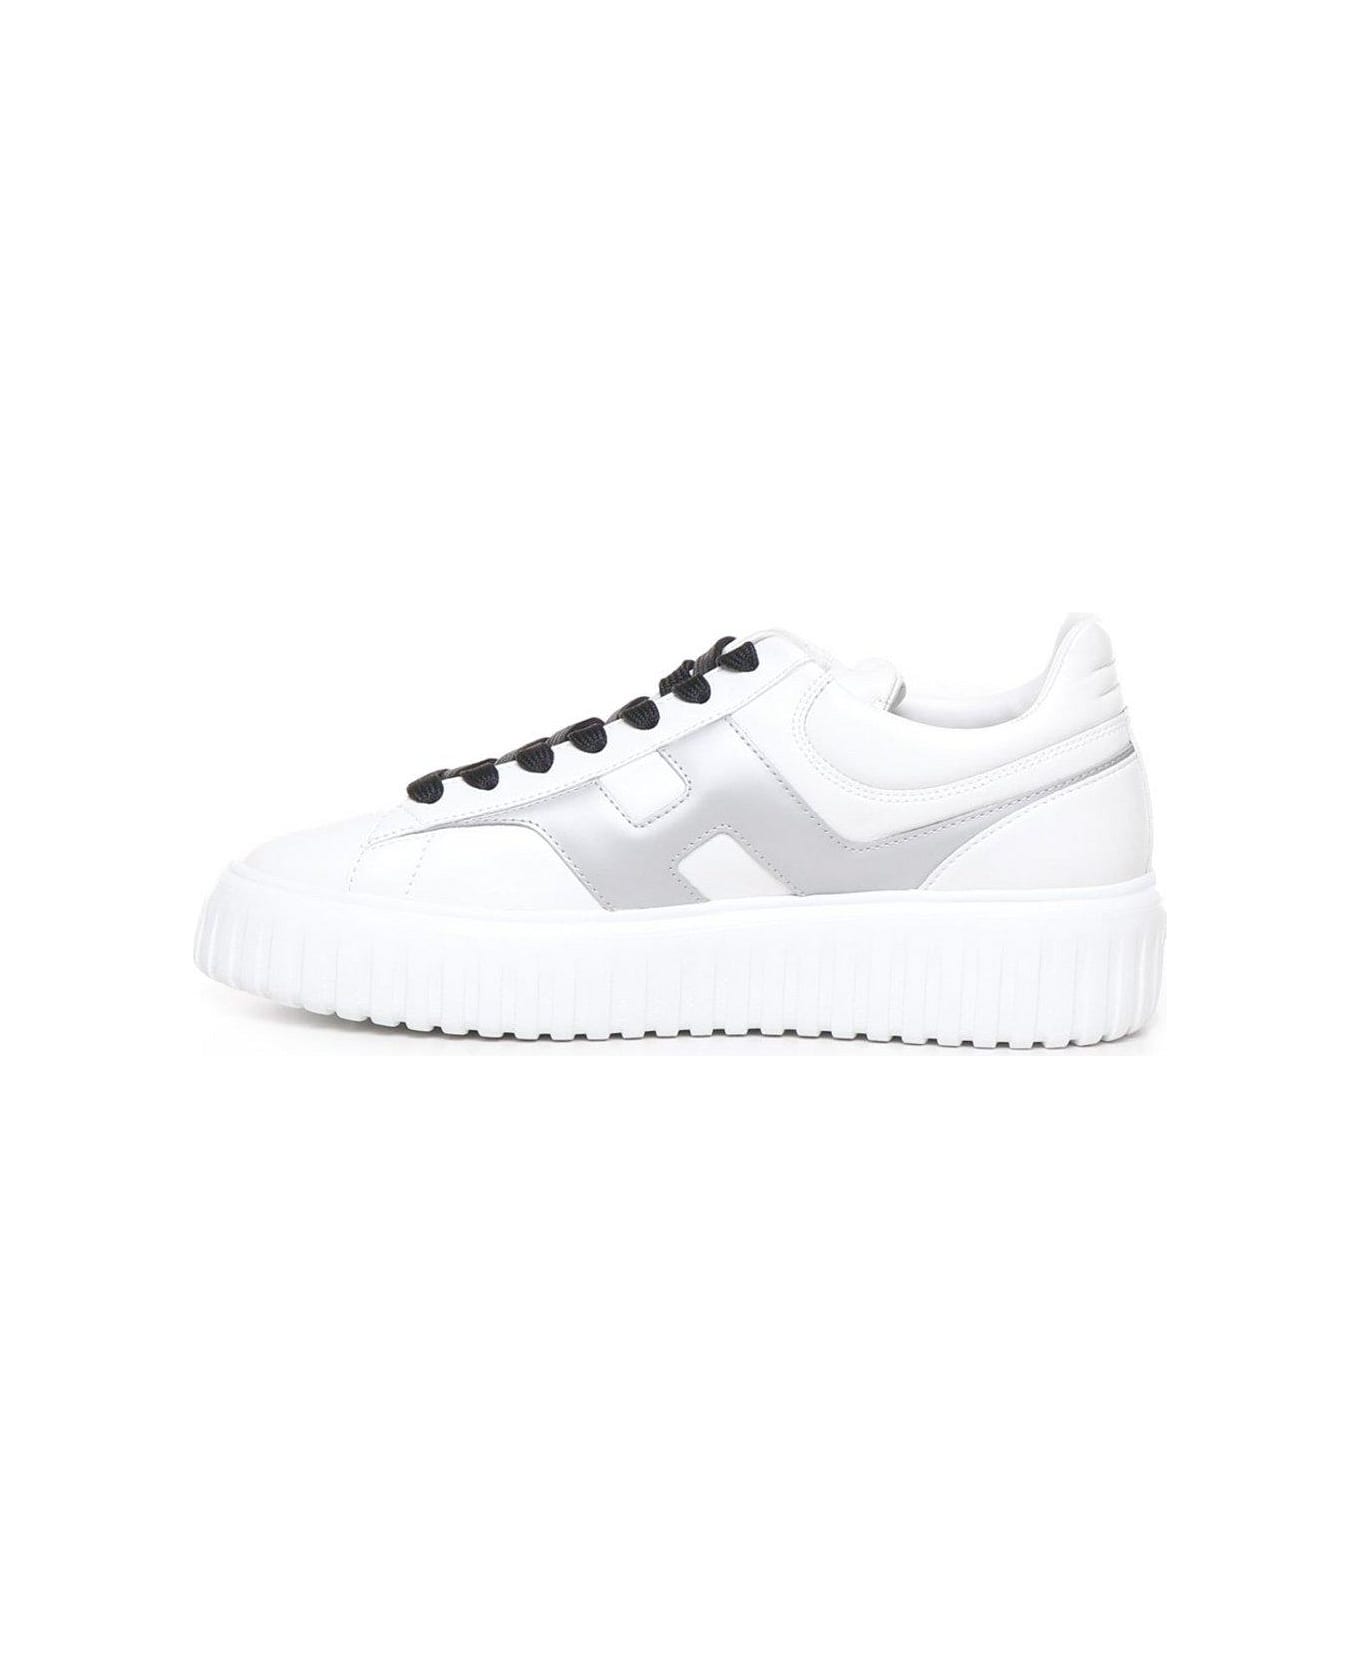 Hogan H-stripes Round Toe Sneakers - White